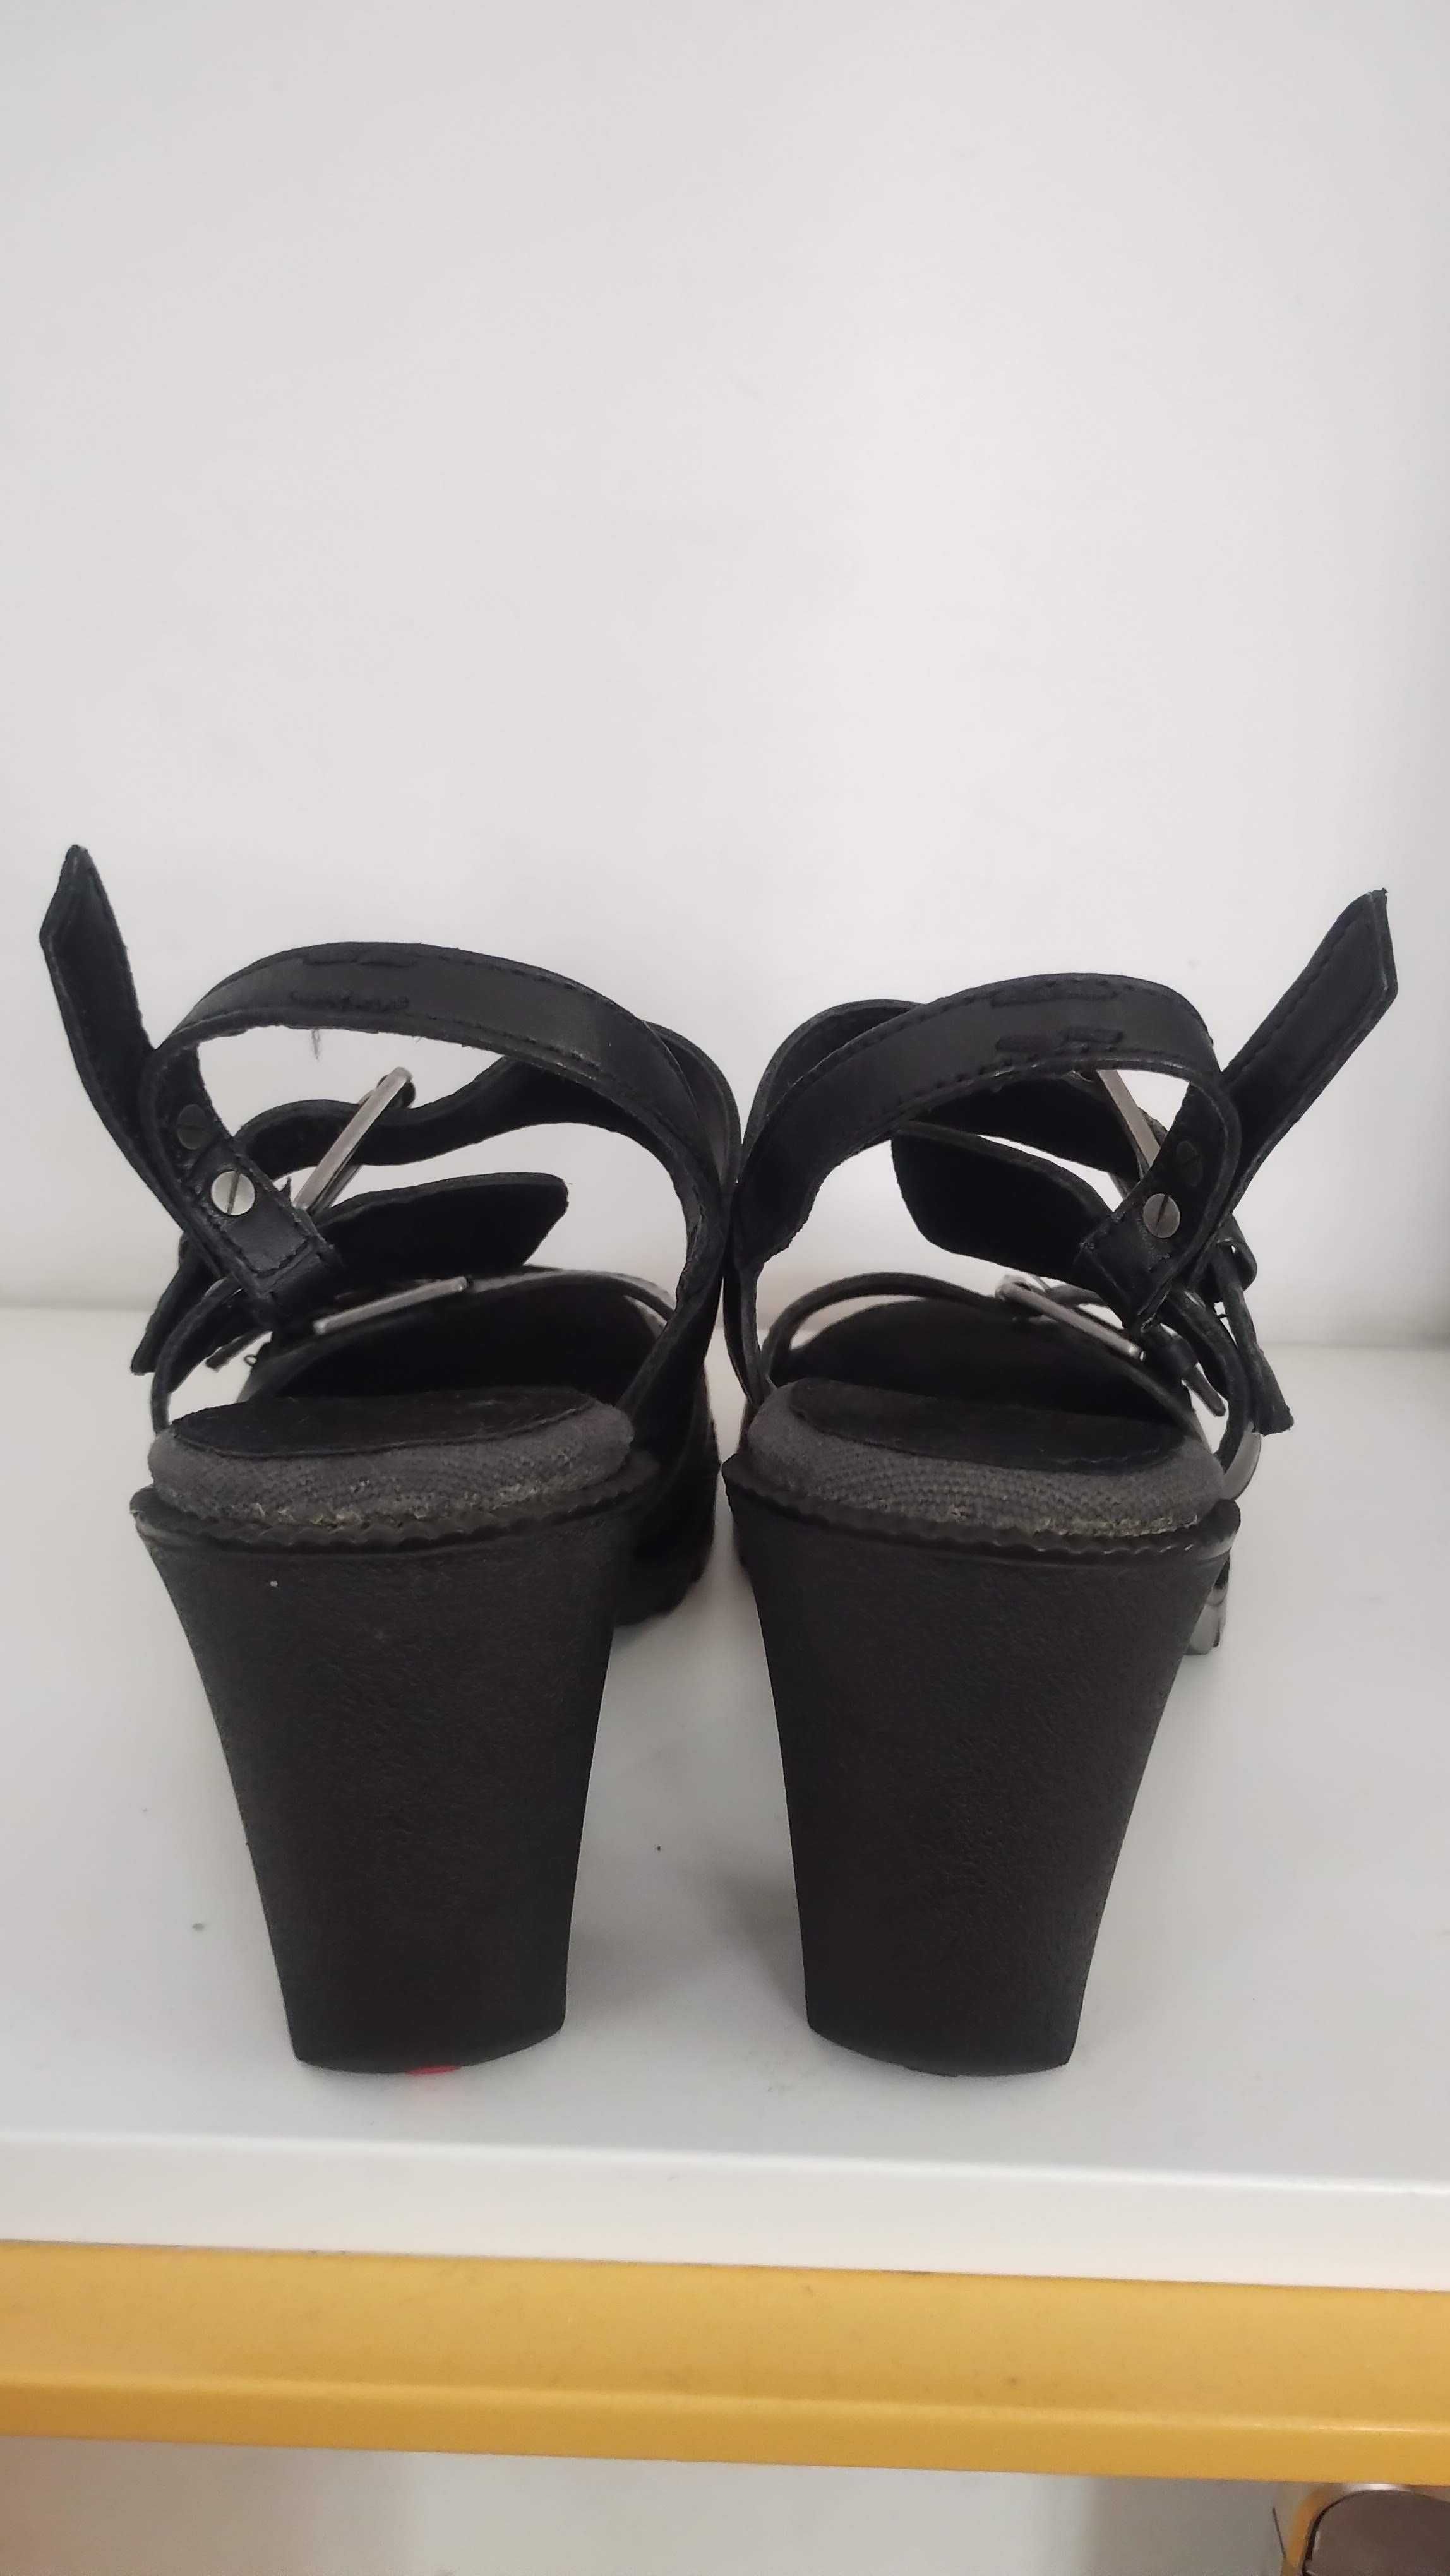 Дамски сандали - Kickers, кожени, 40 размер